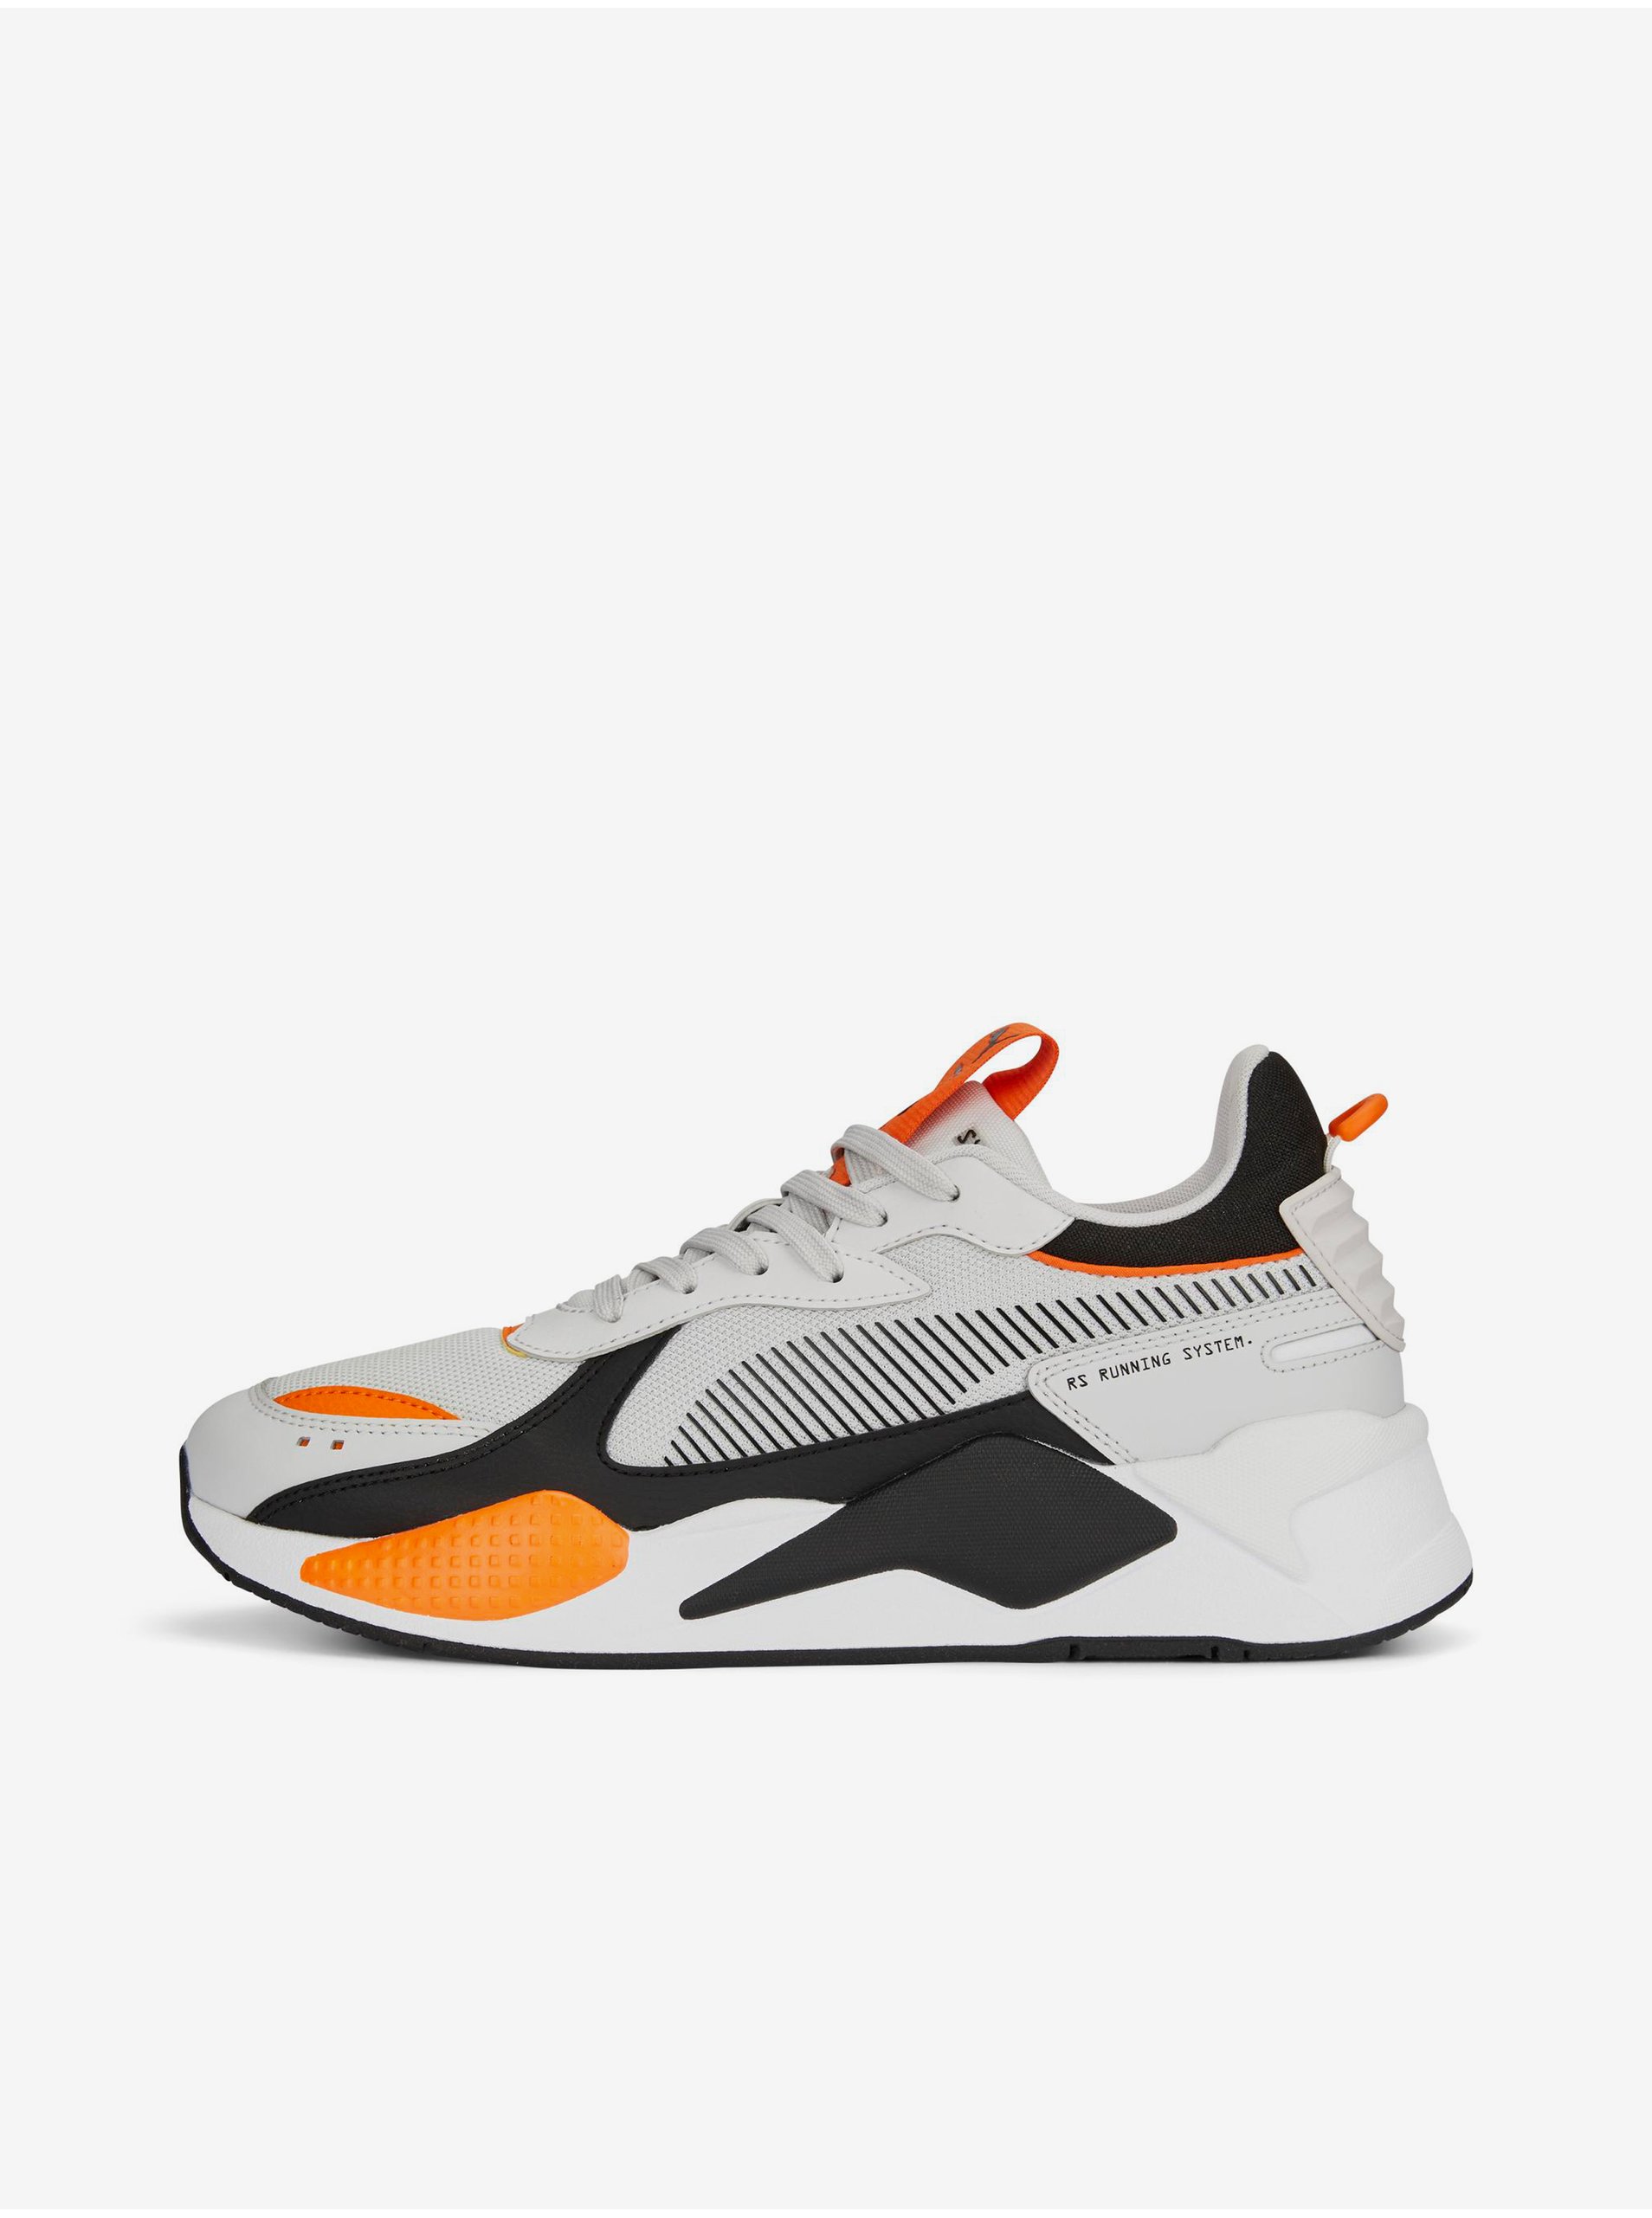 Lacno Topánky pre mužov Puma - biela, oranžová